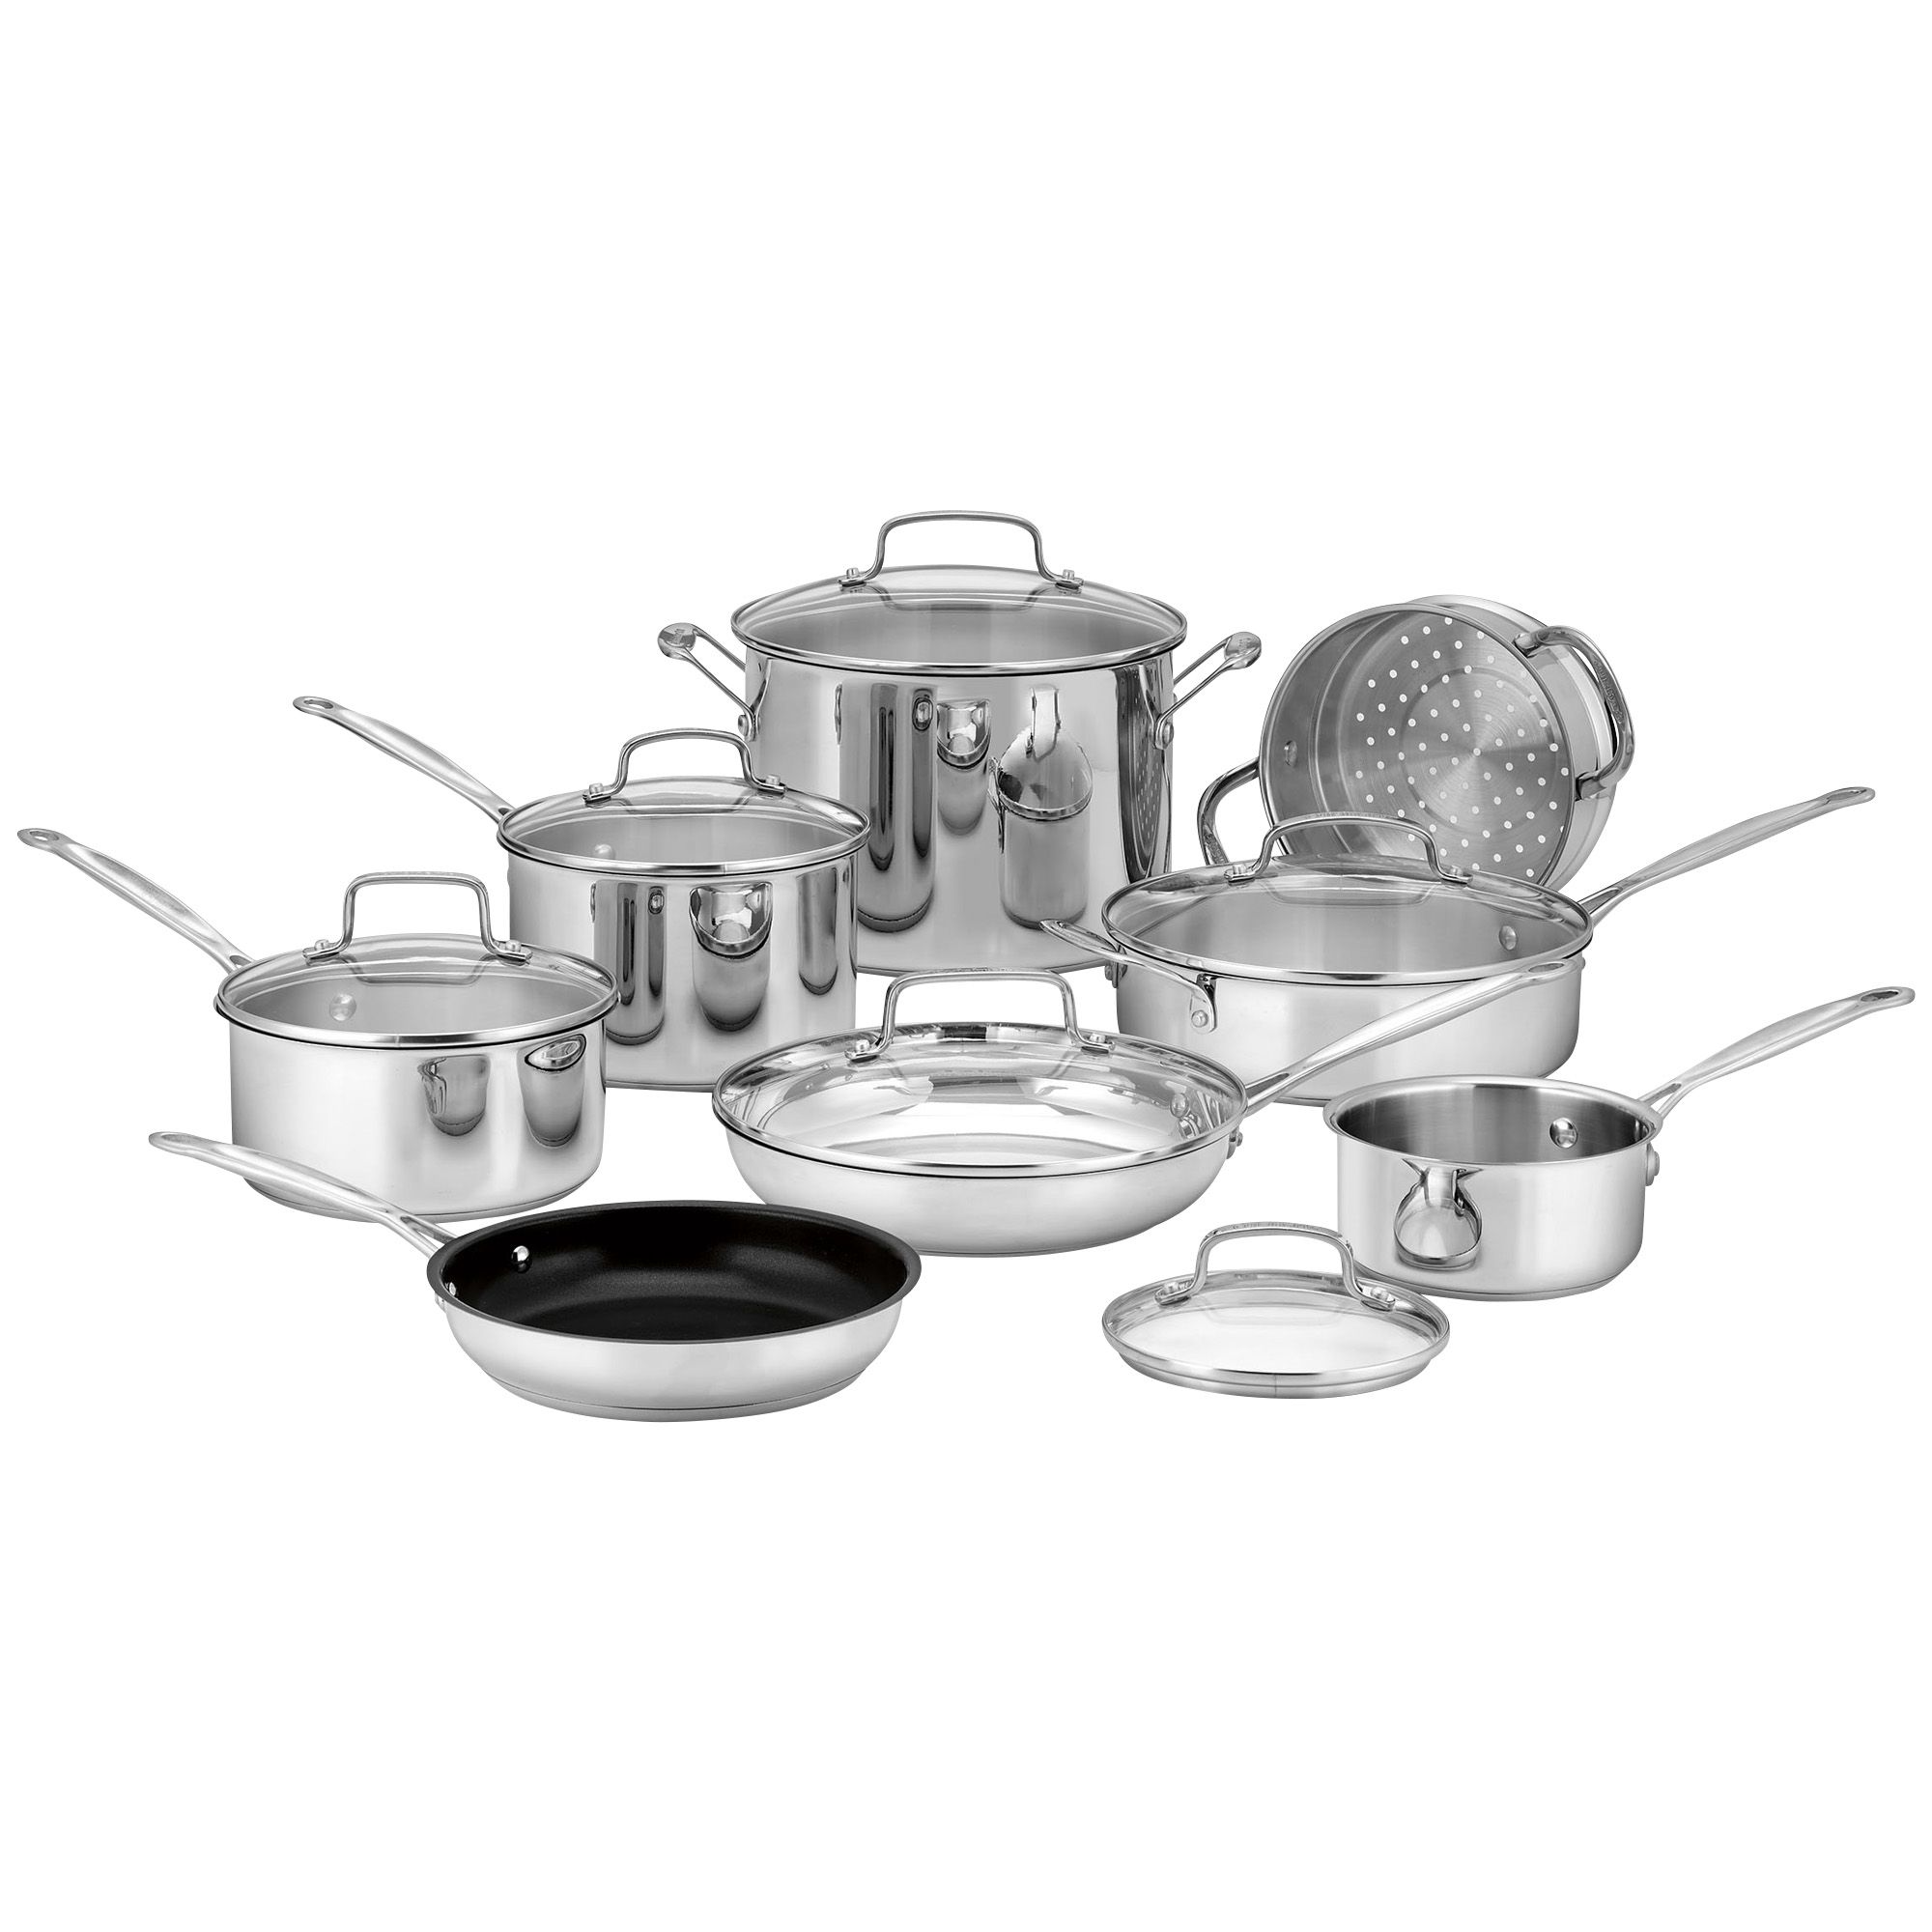 Fingerhut - Cuisinart 11-Pc. Stainless Steel Cookware Set